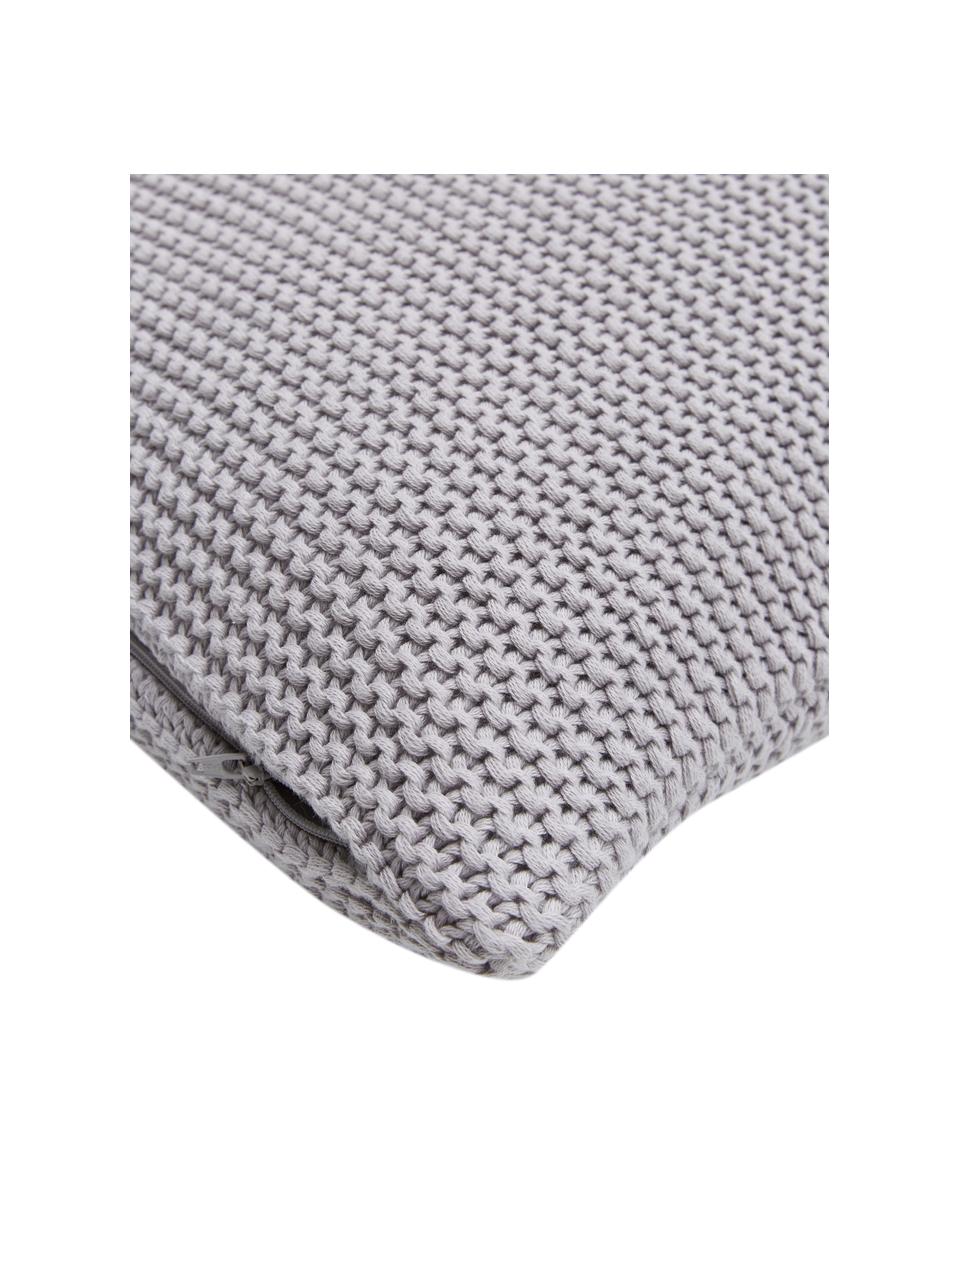 Housse de coussin tricot gris clair Adalyn, 100 % coton bio, certifié GOTS, Gris, larg. 30 x long. 50 cm